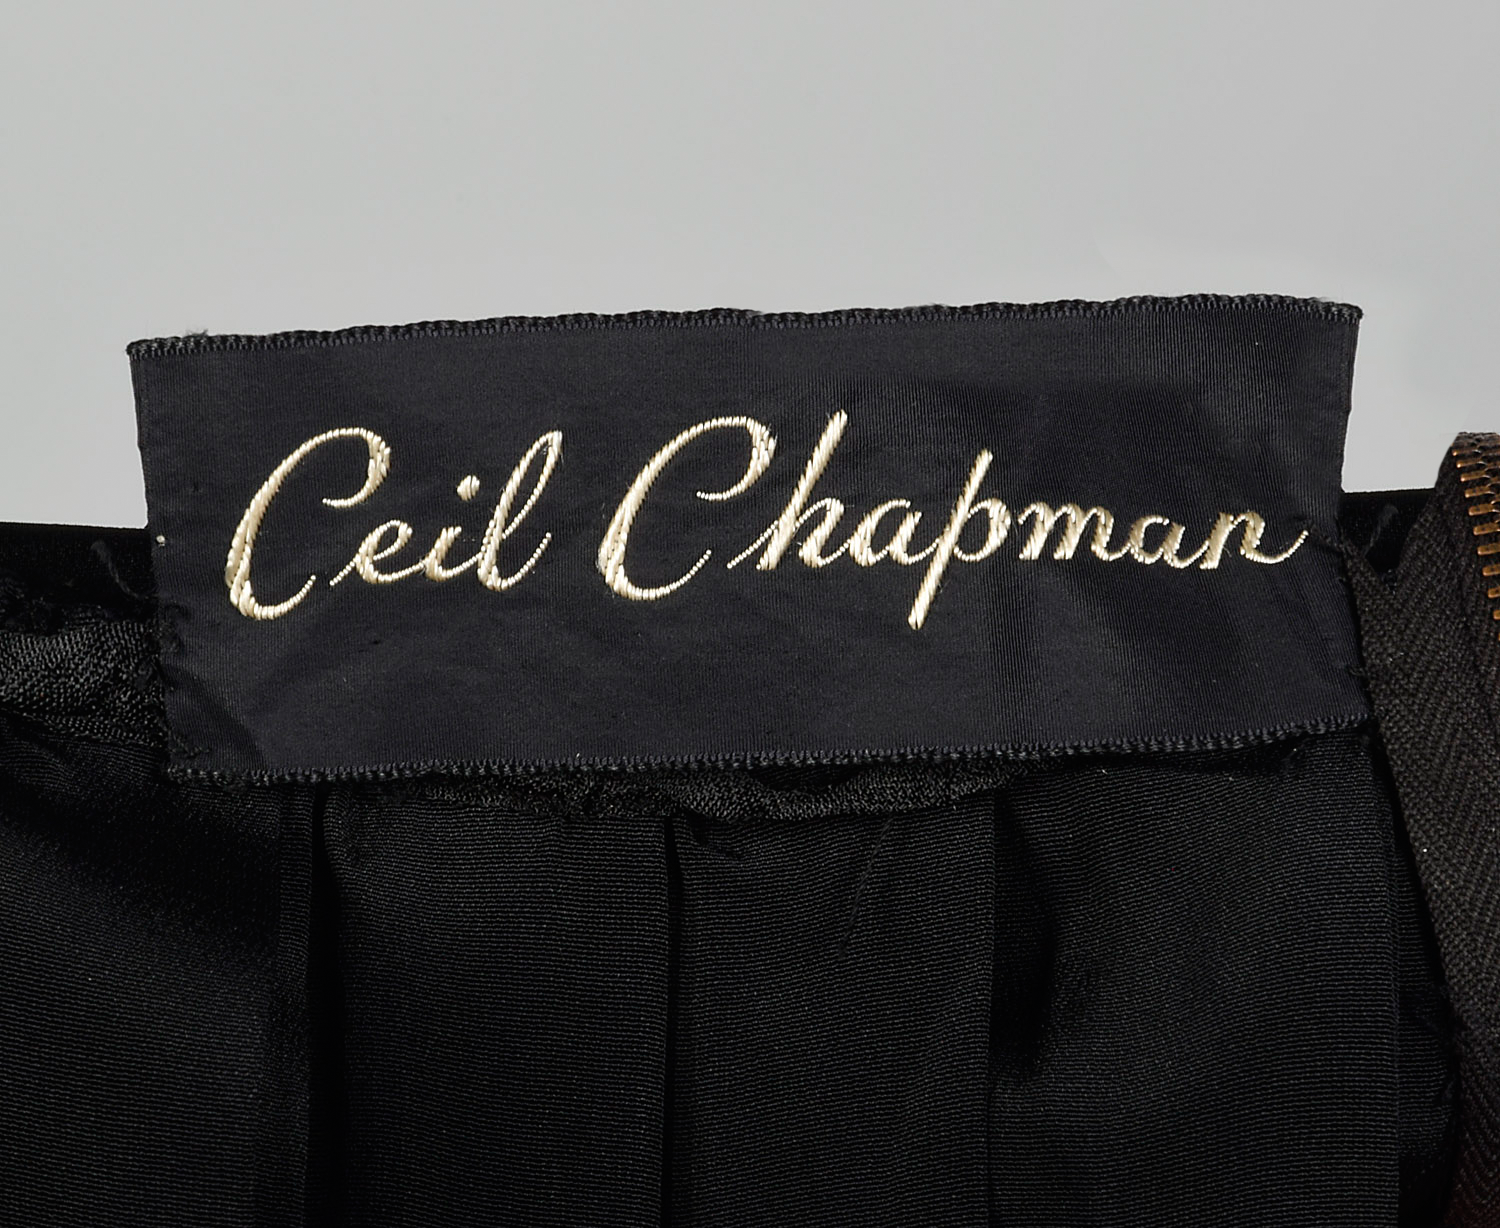 Ceil Chapman Labels